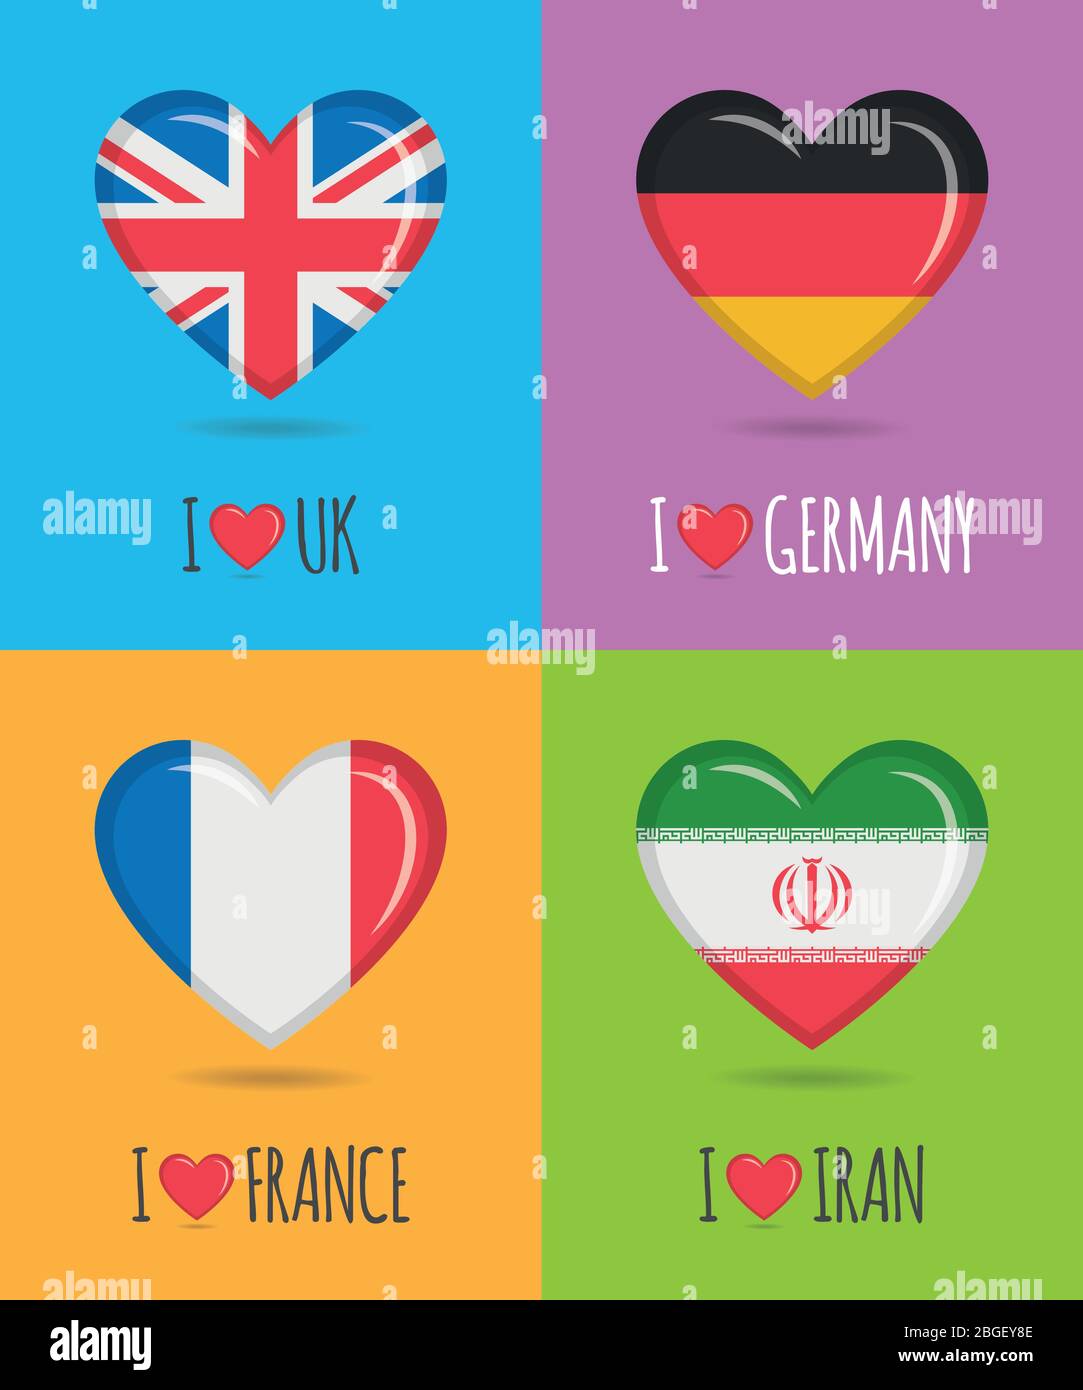 Affiches affectueuses et colorées du Royaume-Uni, de l'Allemagne, de la France et de l'Iran avec drapeau national en forme de coeur et illustration vectorielle de texte Illustration de Vecteur